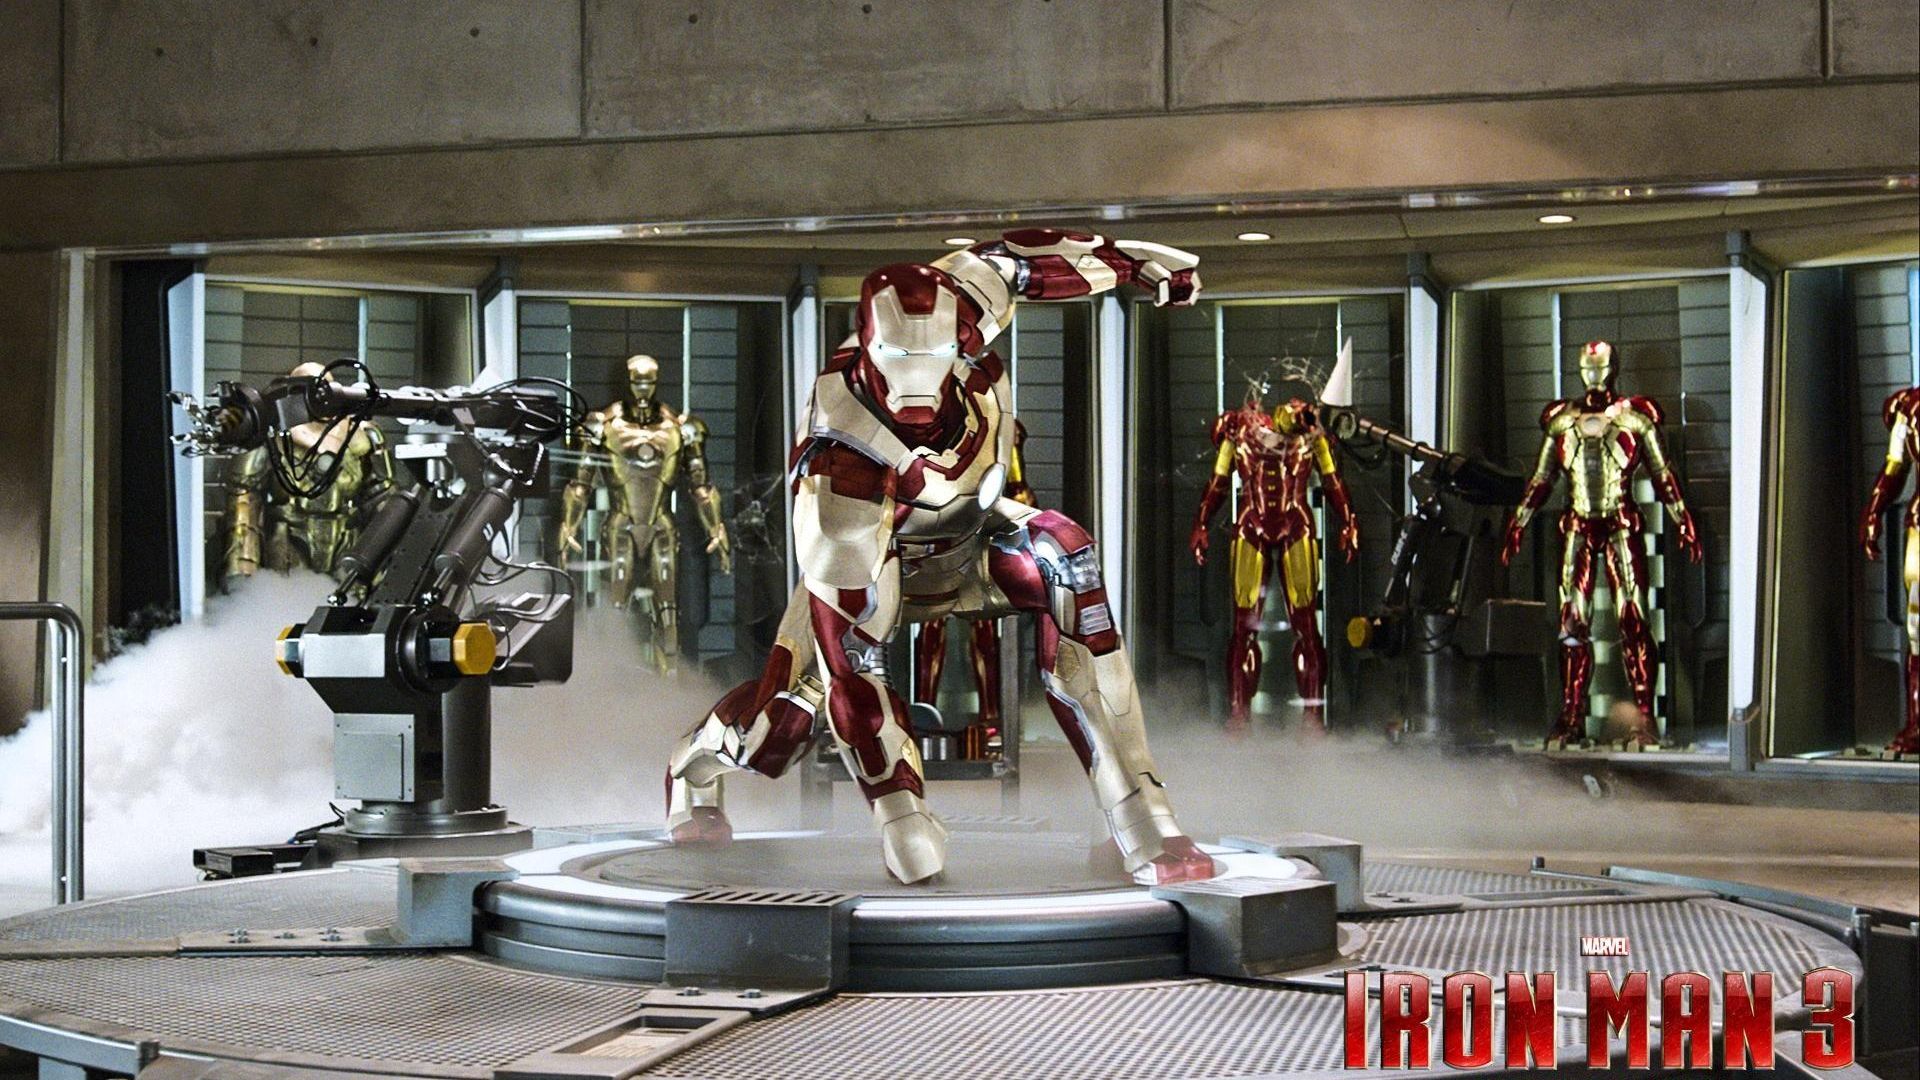 Фильм Железный человек 3 | Iron Man 3 - лучшие обои для рабочего стола